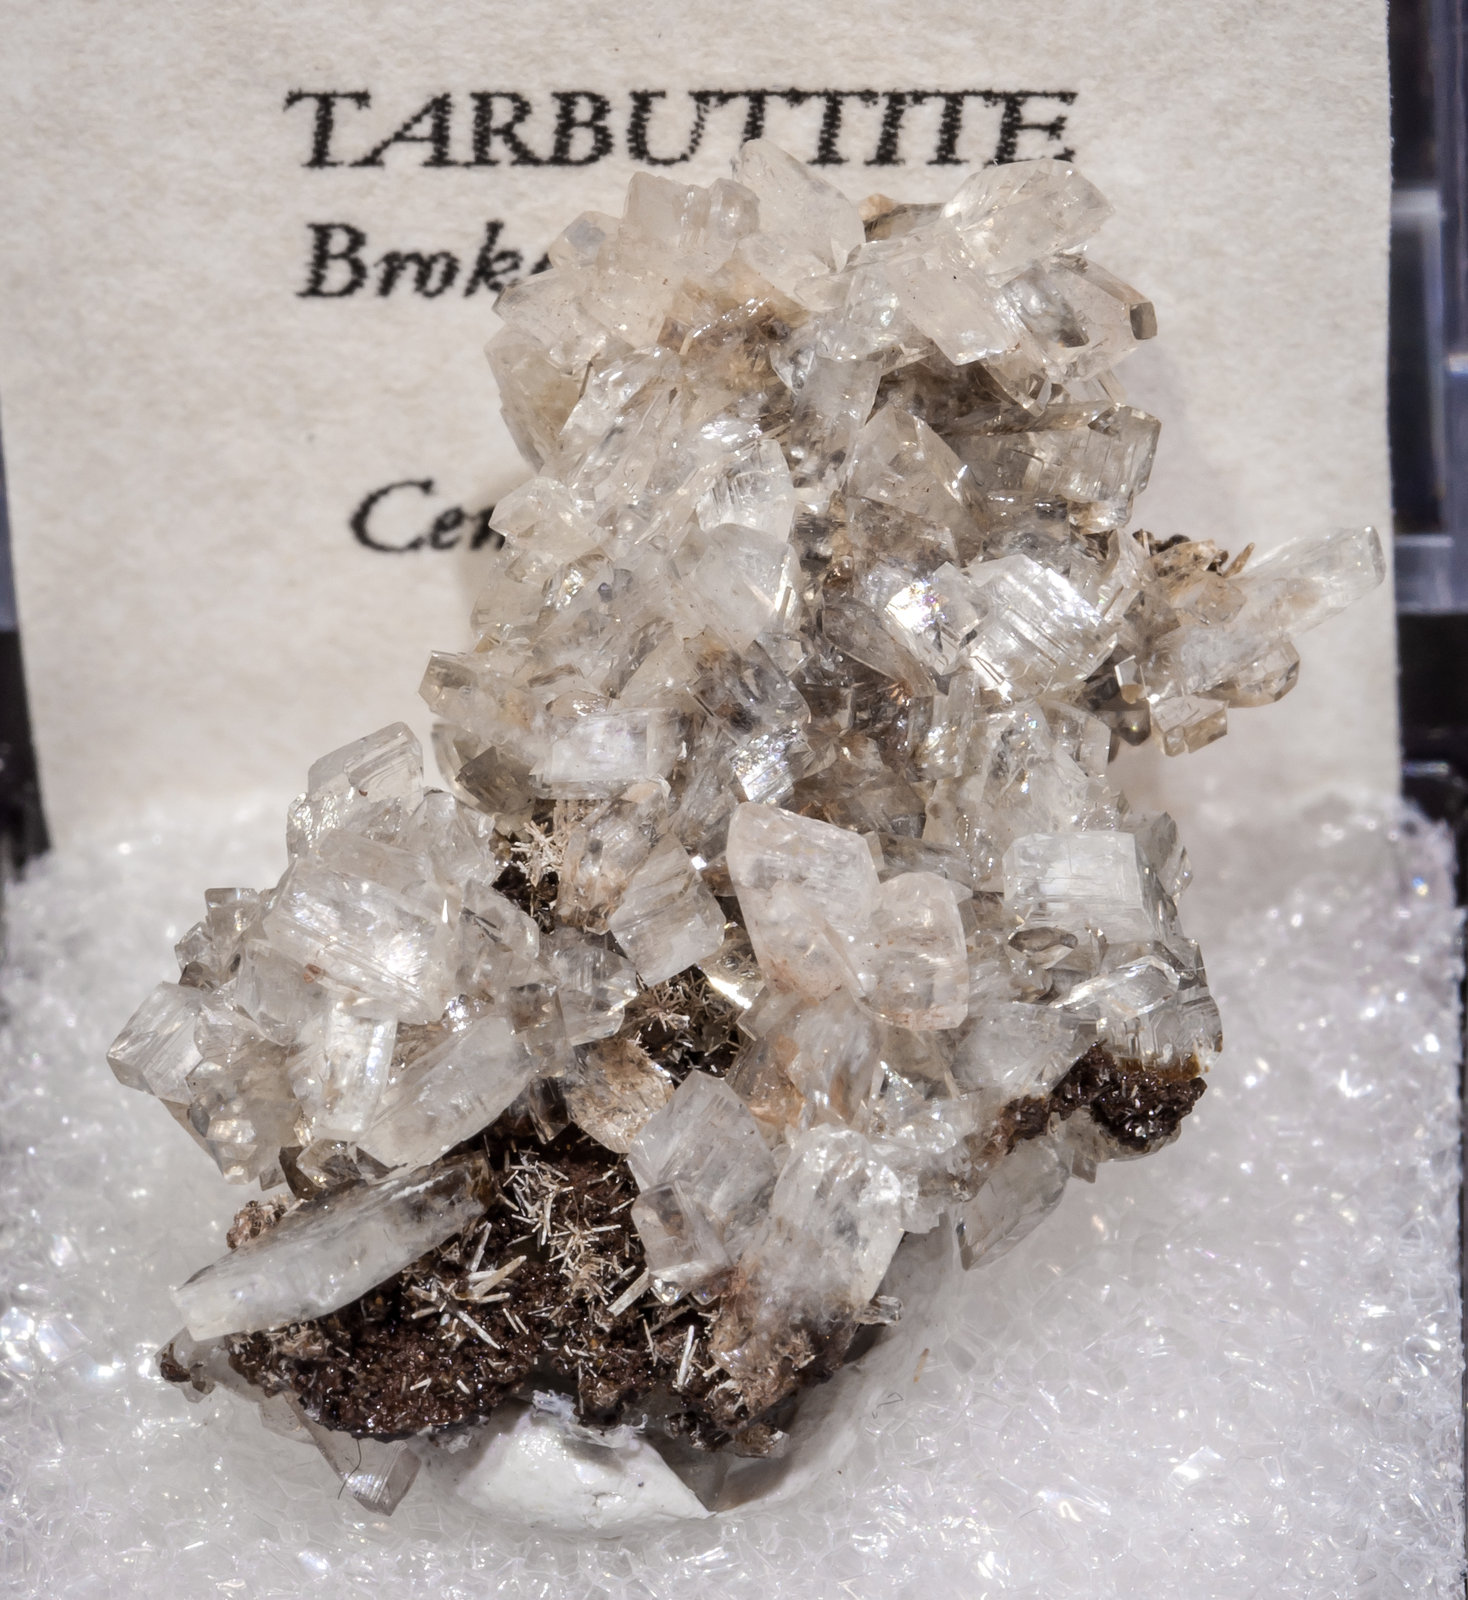 specimens/s_imagesAL5/Tarbuttite-TA37AL5f2.jpg